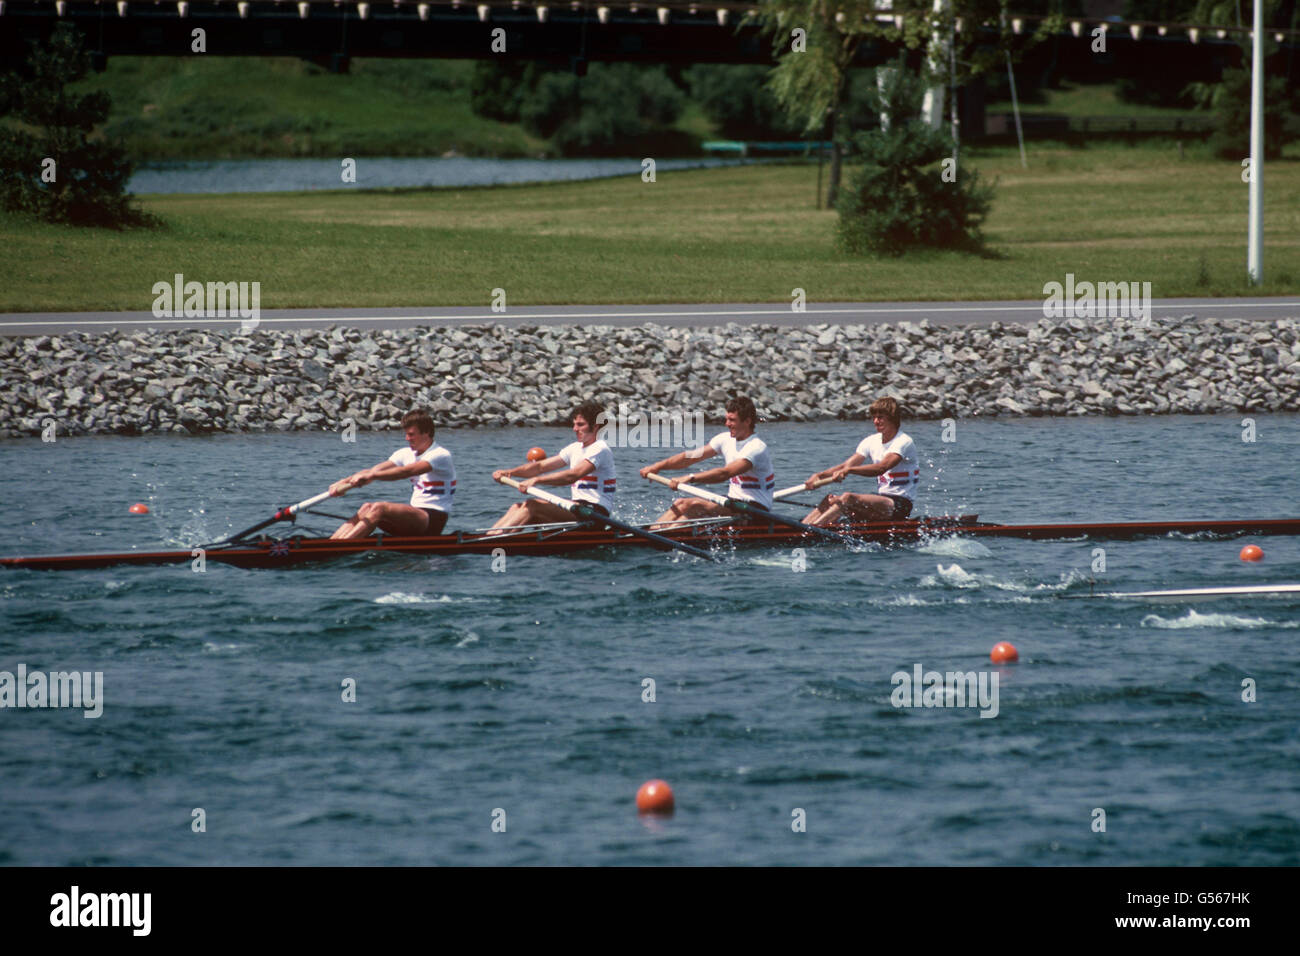 Juegos Olímpicos de Montreal 1976 - Remo - Hombres Coxless Fours - Cuenca  del Olímpico, Île Notre-Dame - Quebec, Canadá Fotografía de stock - Alamy